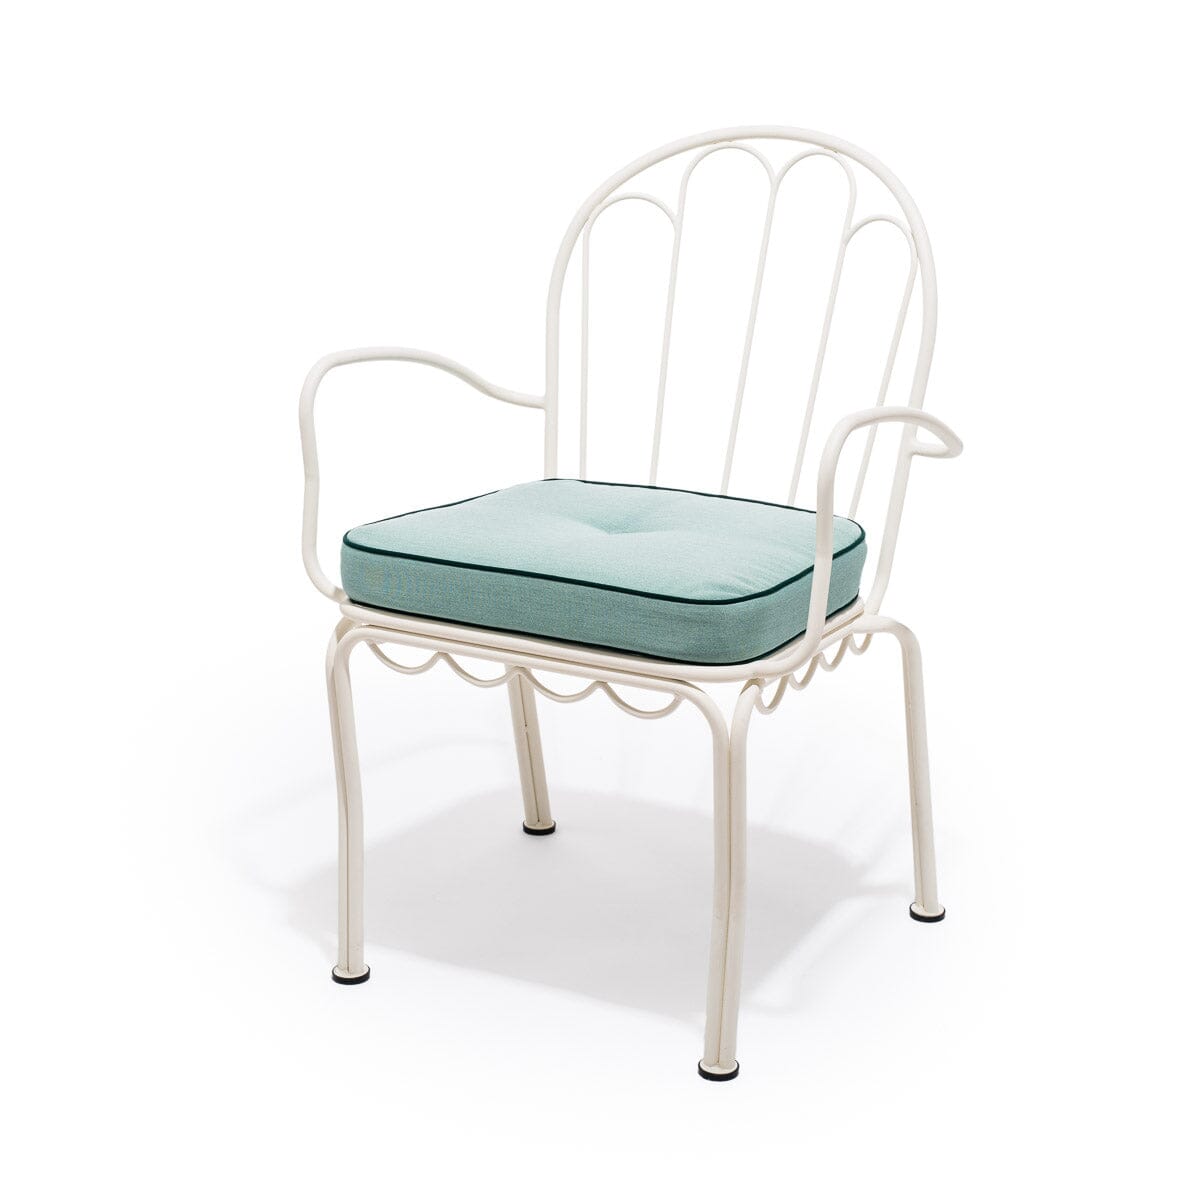 The Al Fresco Chair Cushion - Rivie Green Al Fresco Chair Cushion Business & Pleasure Co 